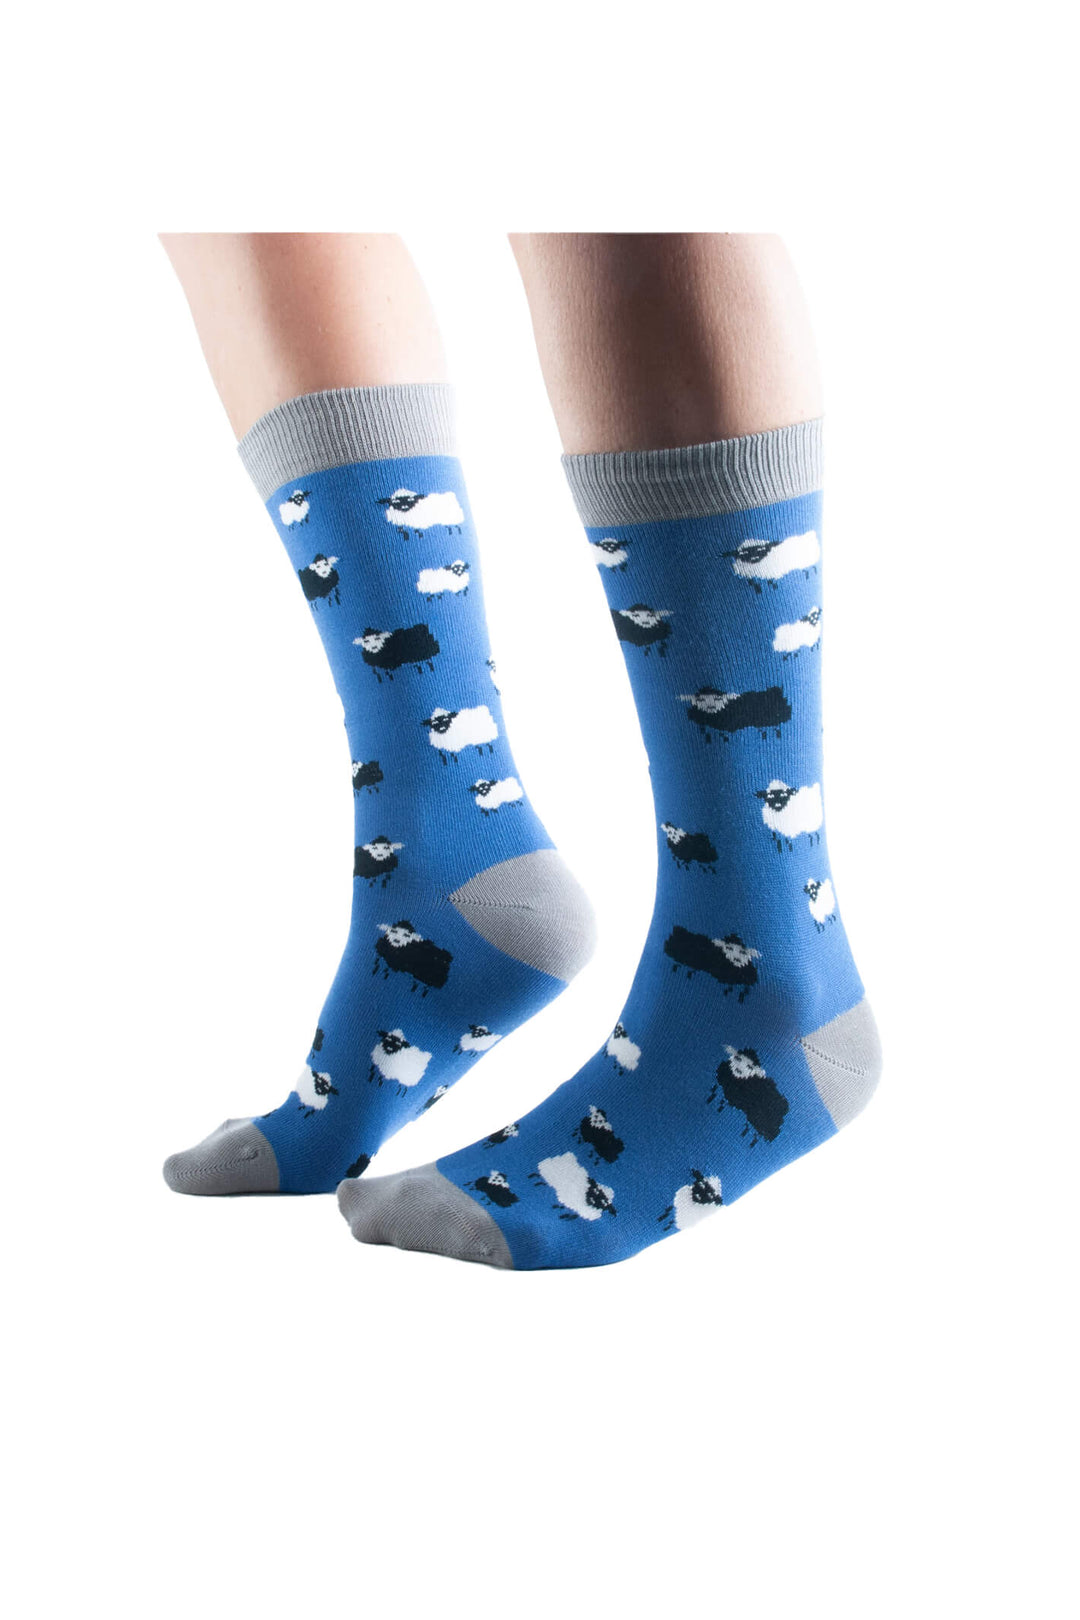 Doris & Dude S905 Blue Sheep Socks - Shirley Allum Boutique